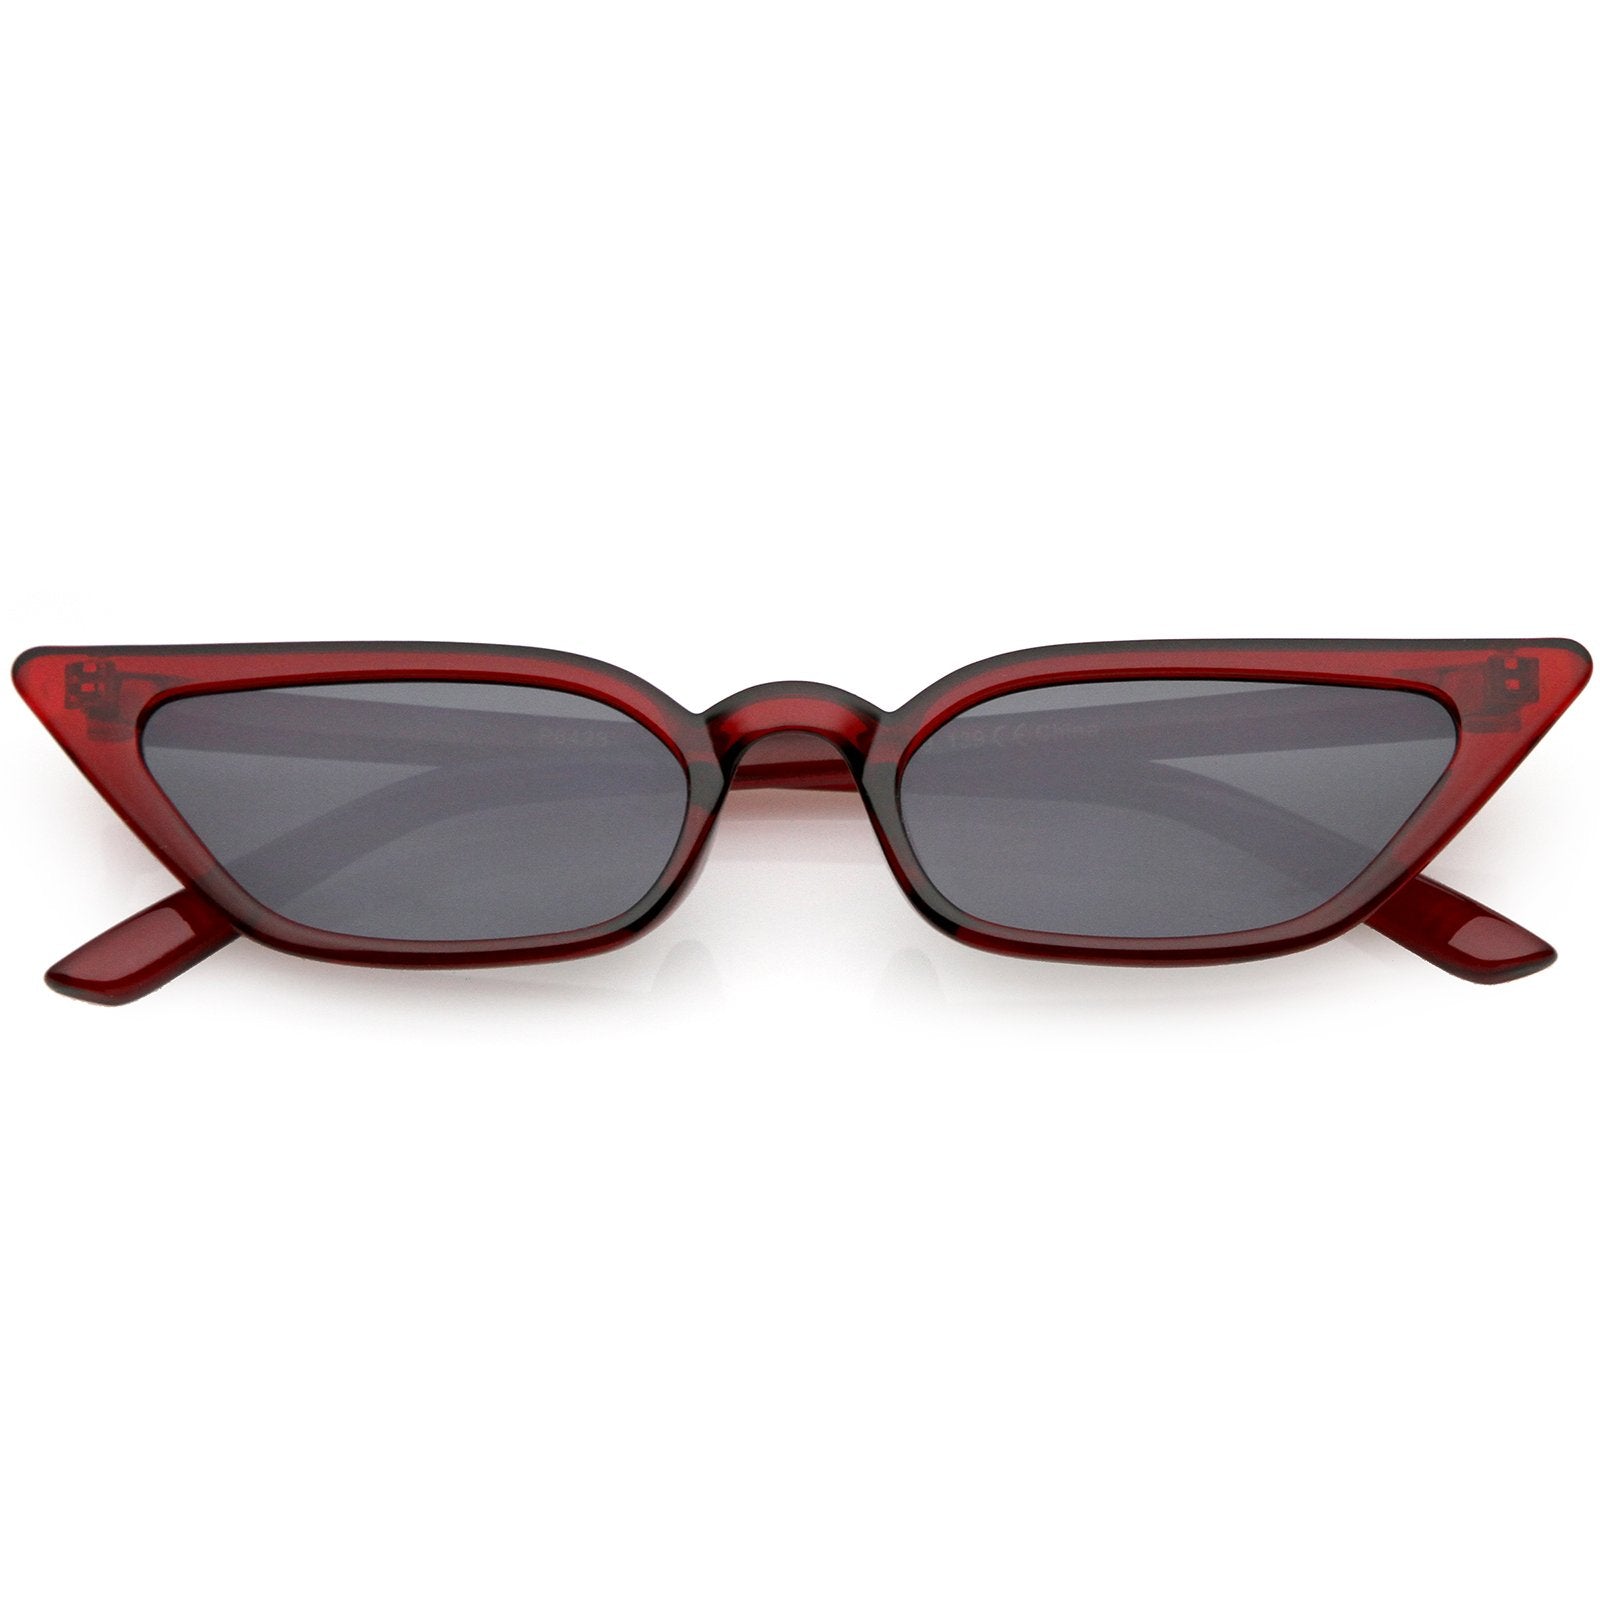 Women's 90's Thin Retro Pointed Cat Eye Sunglasses C571